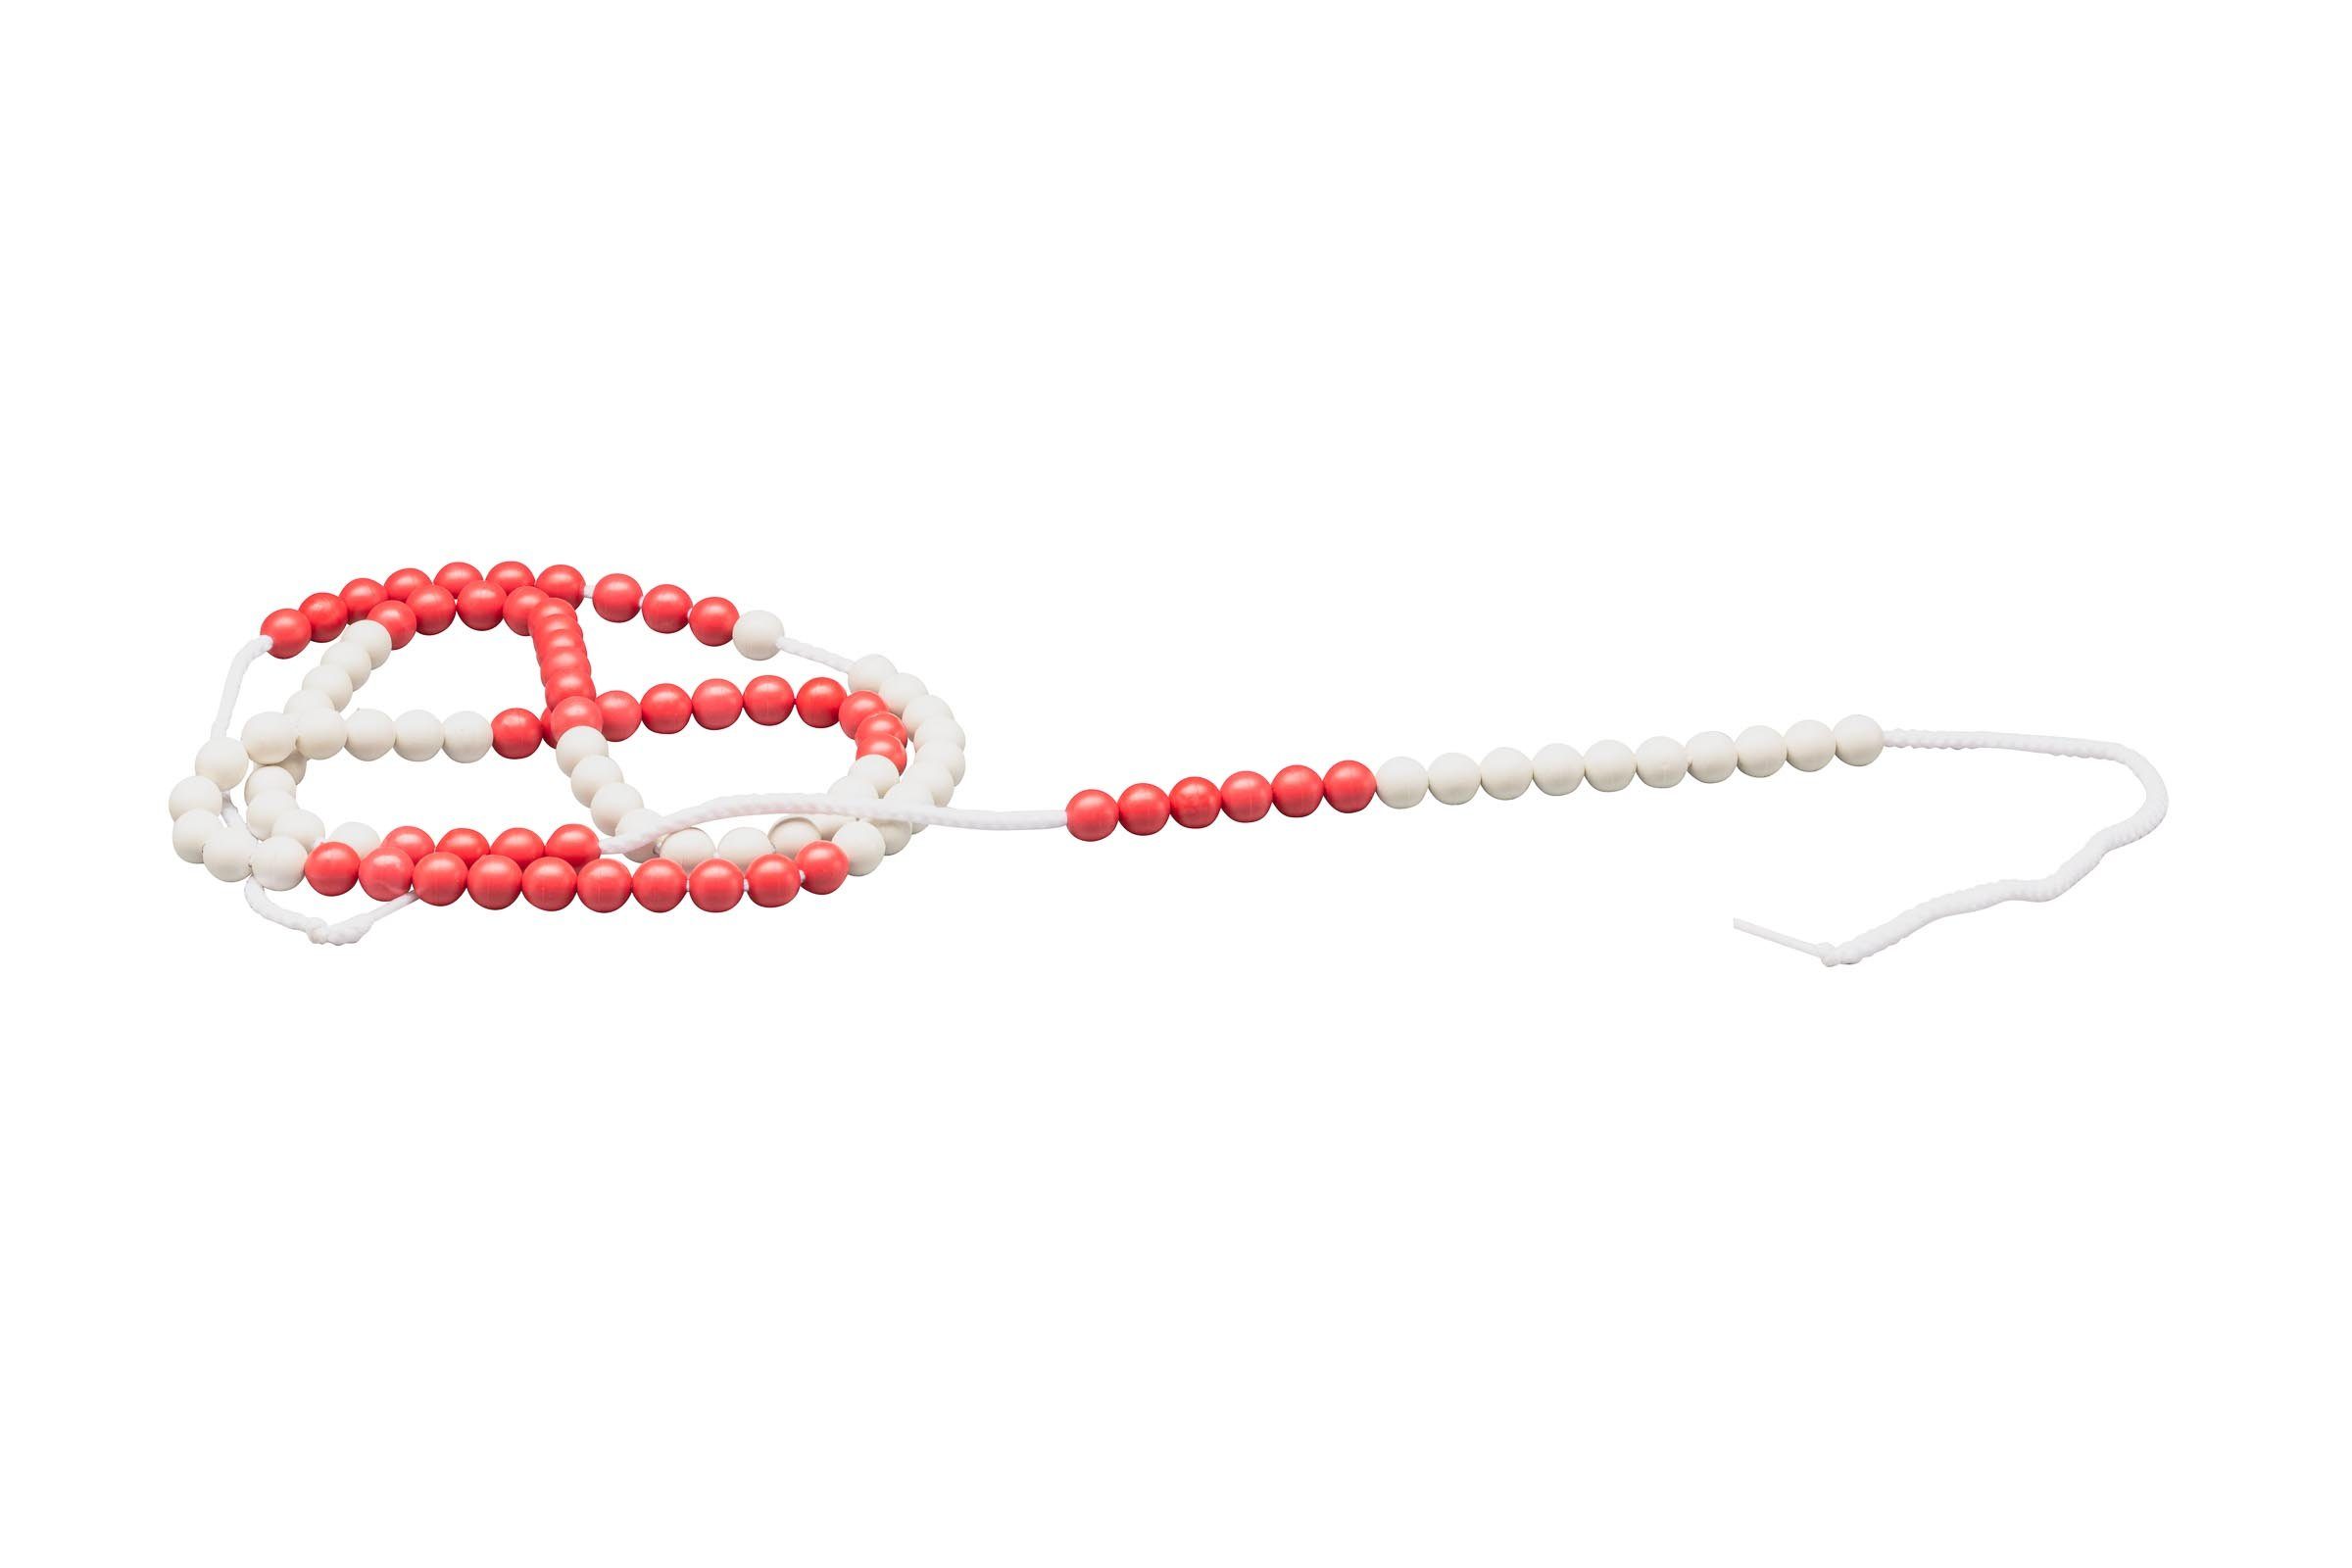 RE-Plastic® (Rot/Weiß) Mathe Wissner® Lernspielzeug Rechenkette 100er  Zählkette lernen aktiv Zahlenraum, lernen,